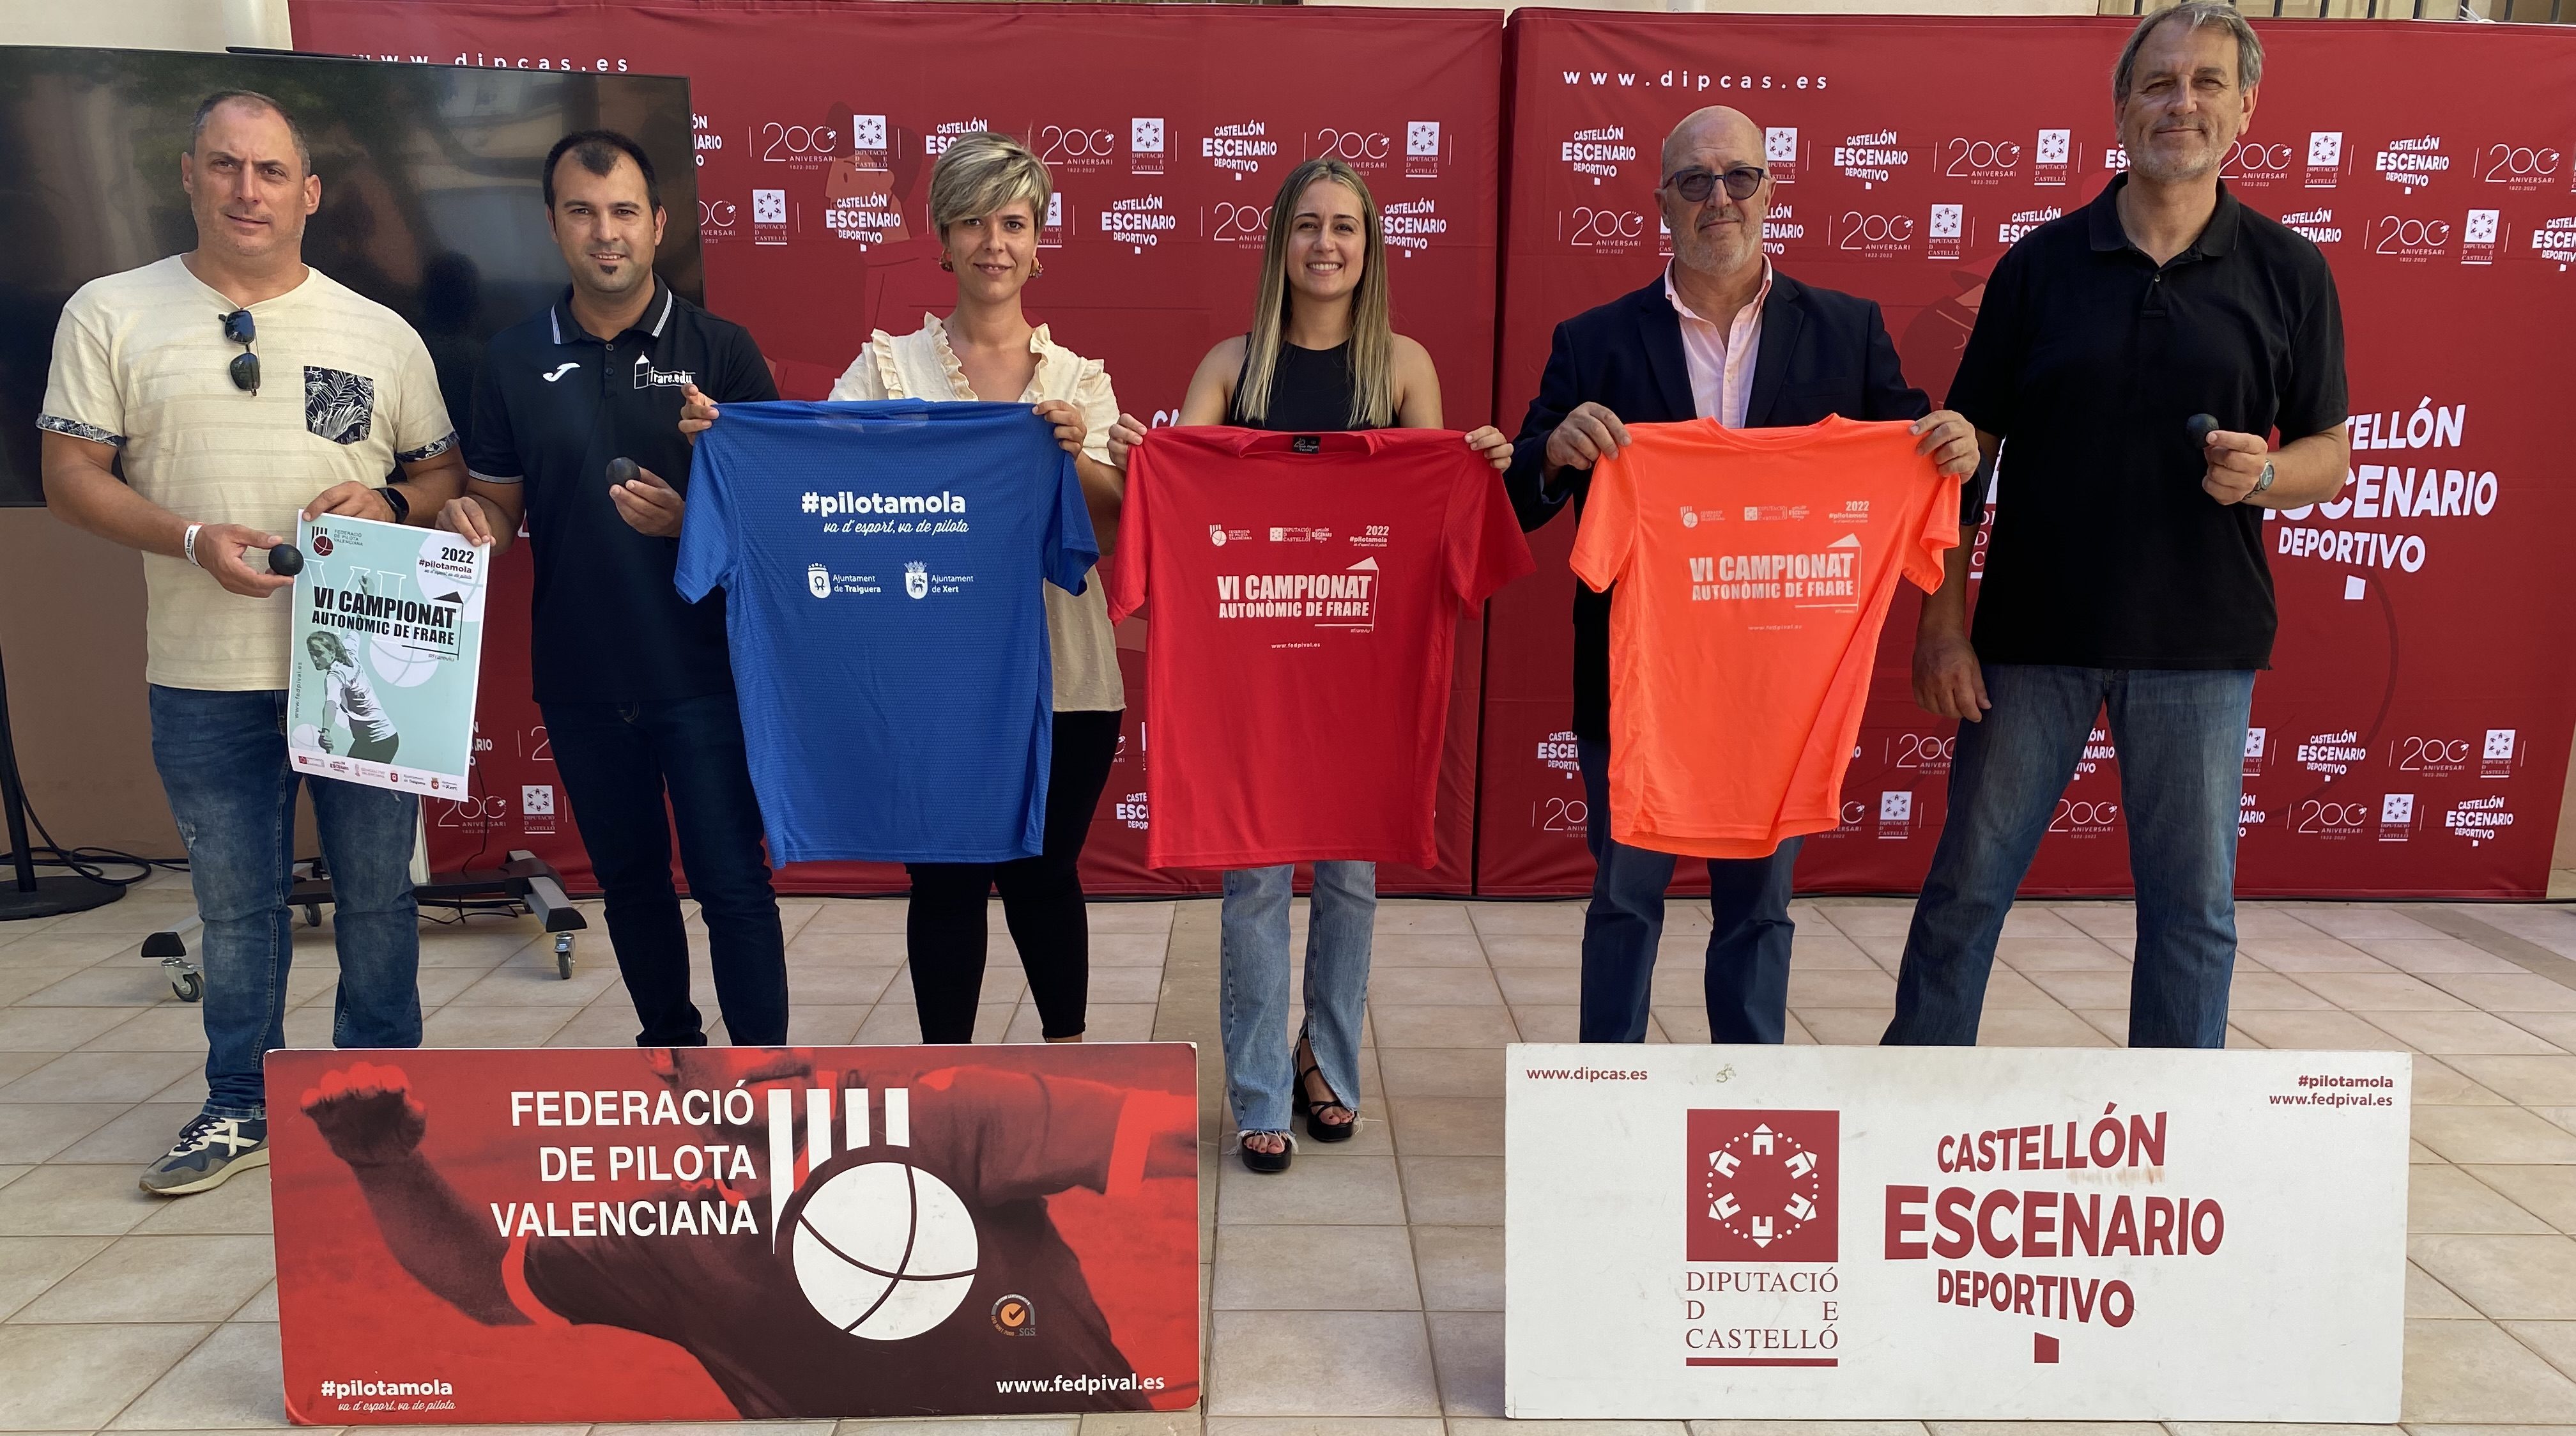 La Diputació dona suport al VI Campionat de Frare que se celebrarà el cap de setmana a Traiguera i Xert